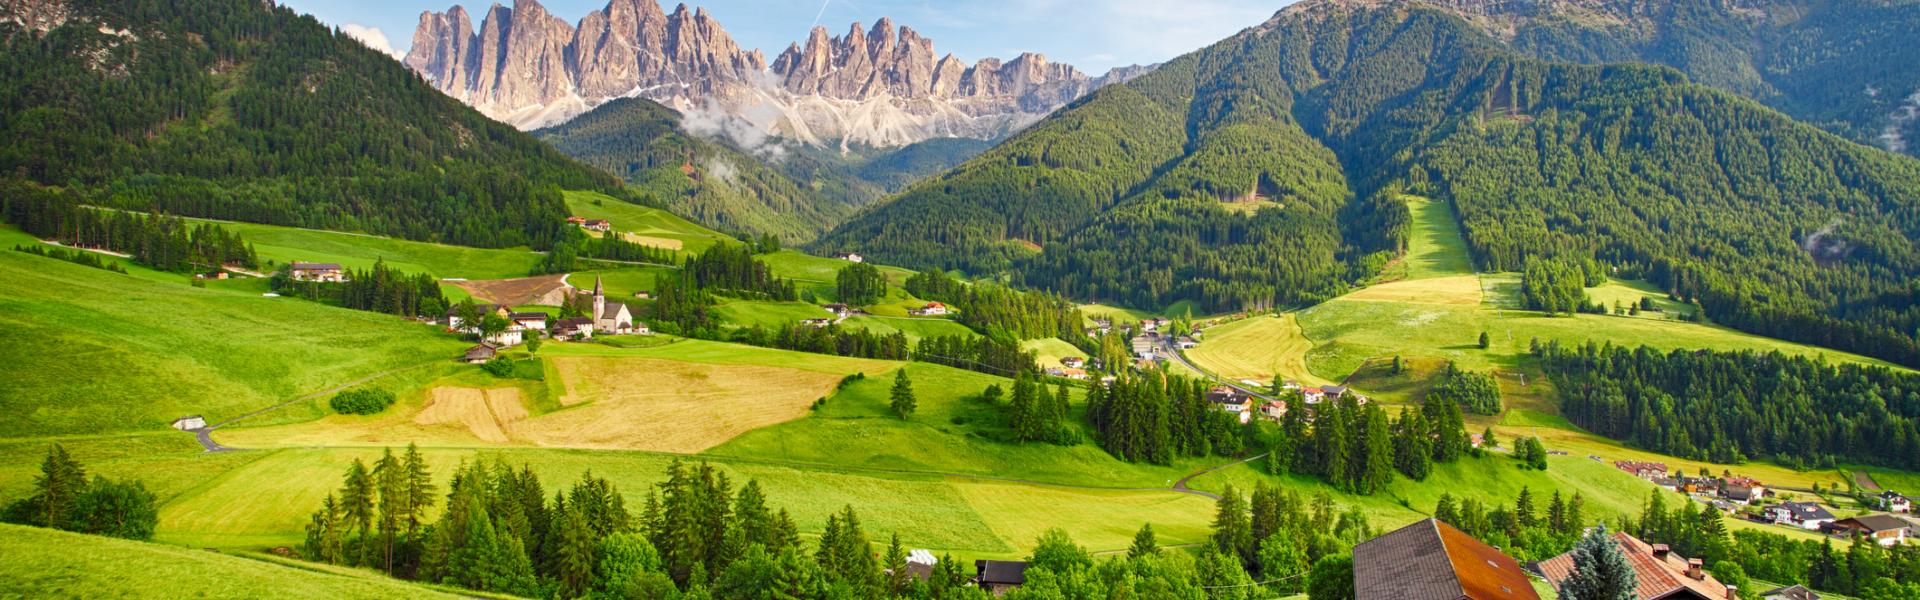 Ferienwohnungen und Ferienhäuser in Trentino - HomeToGo